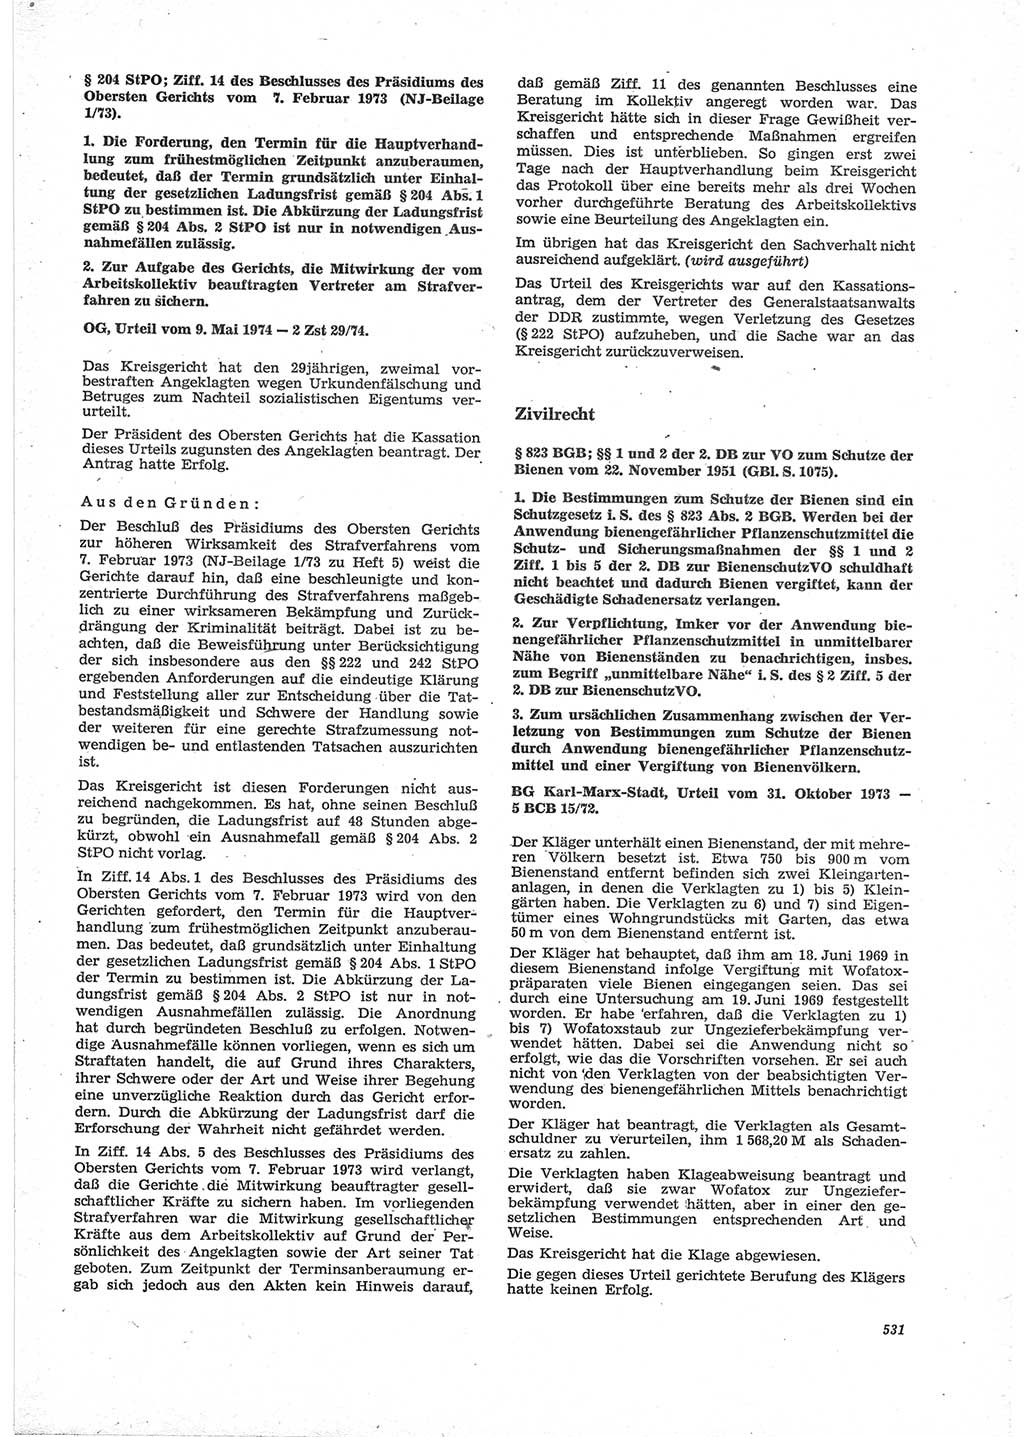 Neue Justiz (NJ), Zeitschrift für Recht und Rechtswissenschaft [Deutsche Demokratische Republik (DDR)], 28. Jahrgang 1974, Seite 531 (NJ DDR 1974, S. 531)